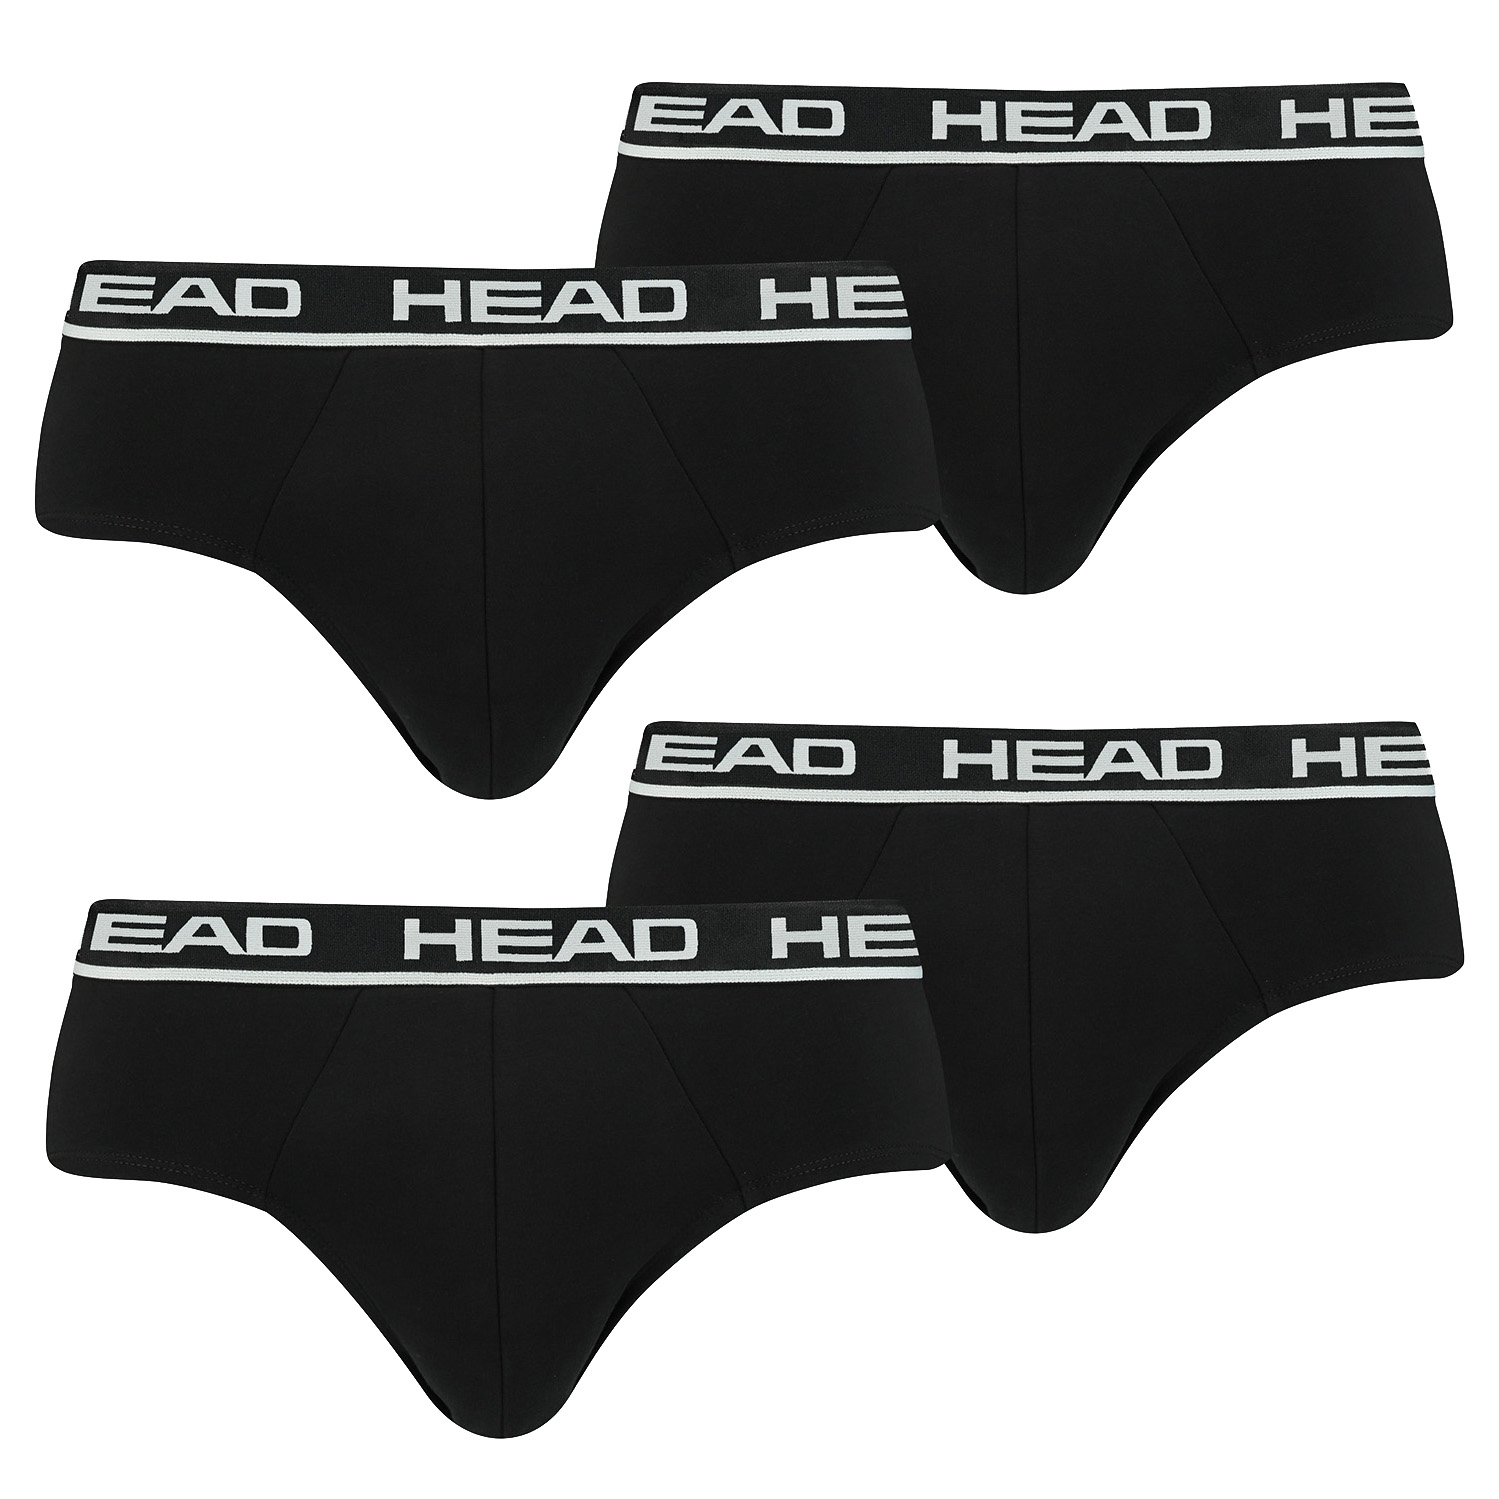 HEAD Herren Basic Brief Pant Slip Unterwäsche Unterhose 4 er Pack , Farbe:002 - Black, Bekleidungsgröße:S